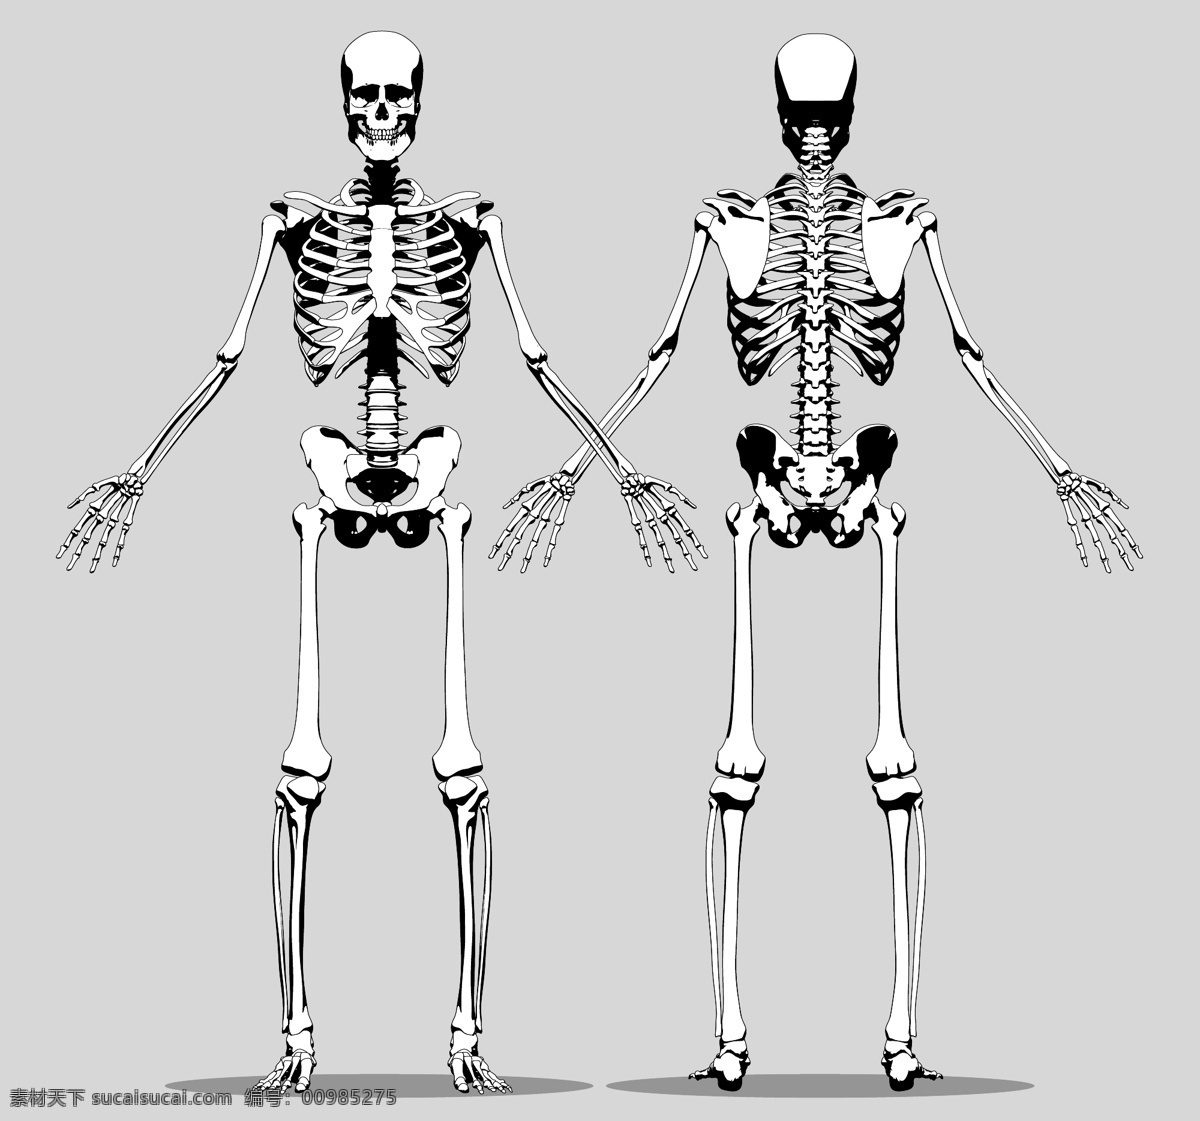 人体骨骼 人体透视图 人体动作 骷髅 人体透视 骨头组织 人体 骨骼 骨架 医疗保健 医学 生活百科 矢量